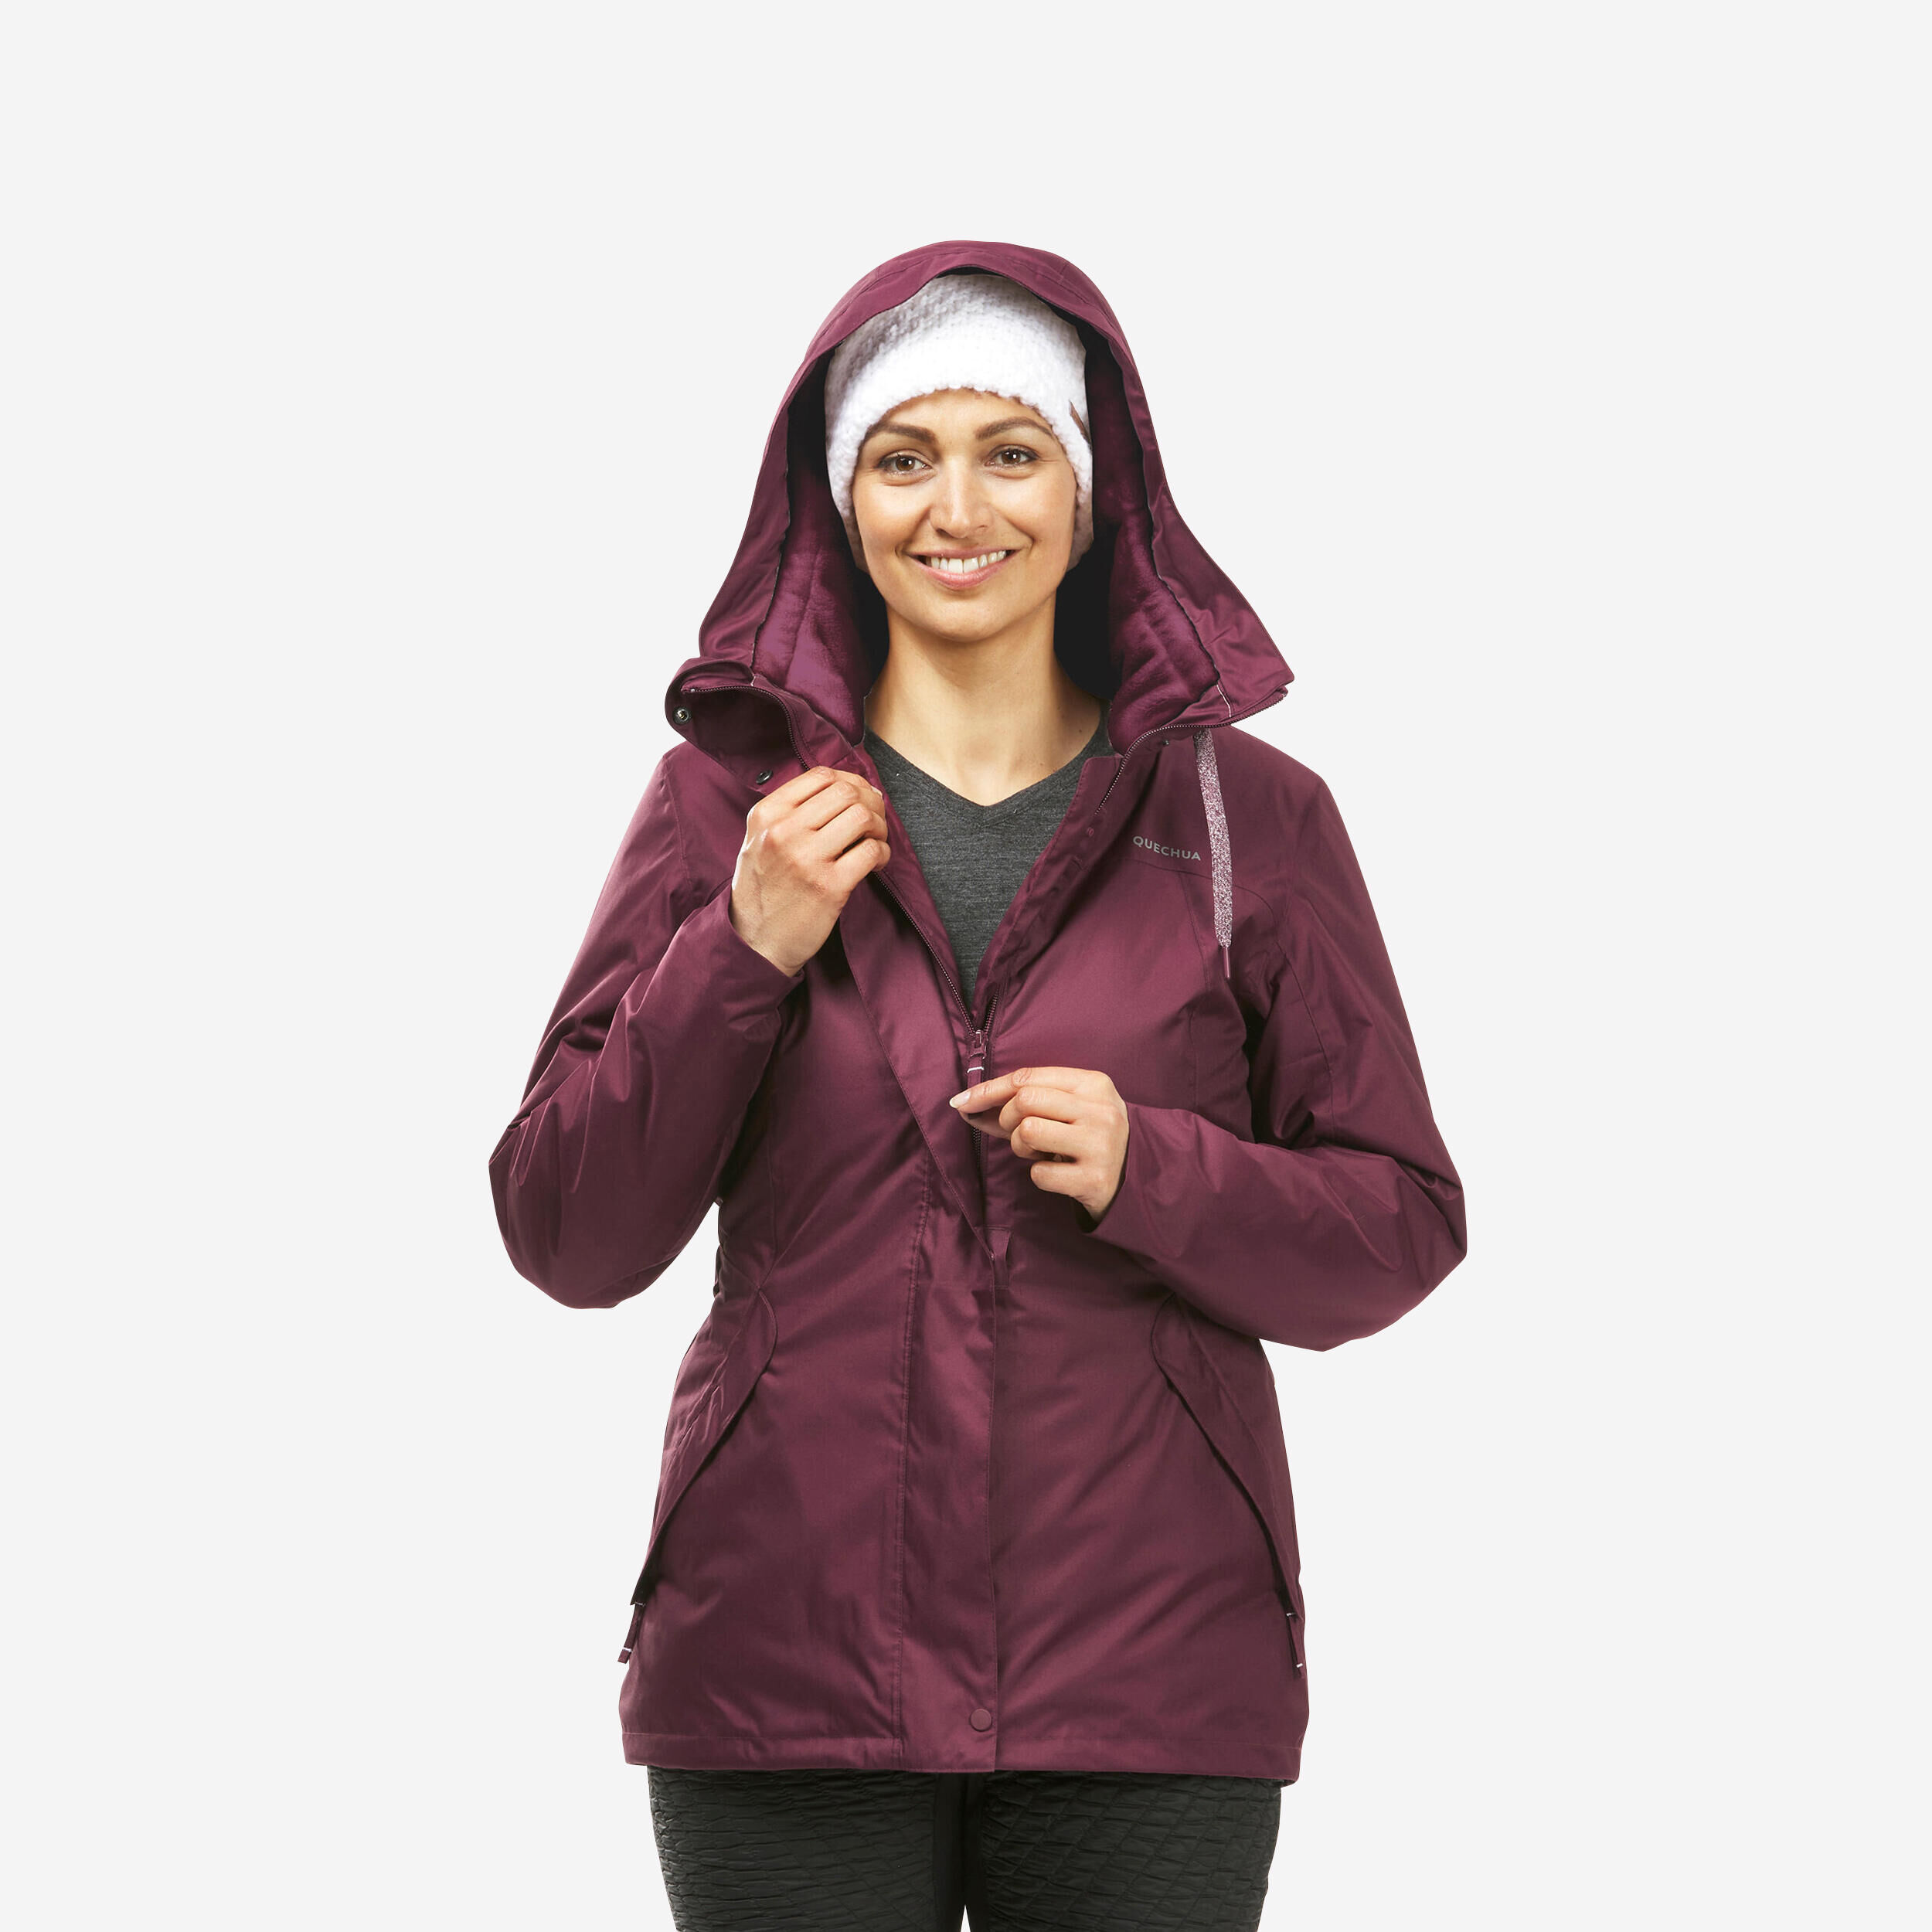 QUECHUA Women’s hiking waterproof winter jacket - SH500 -10°C